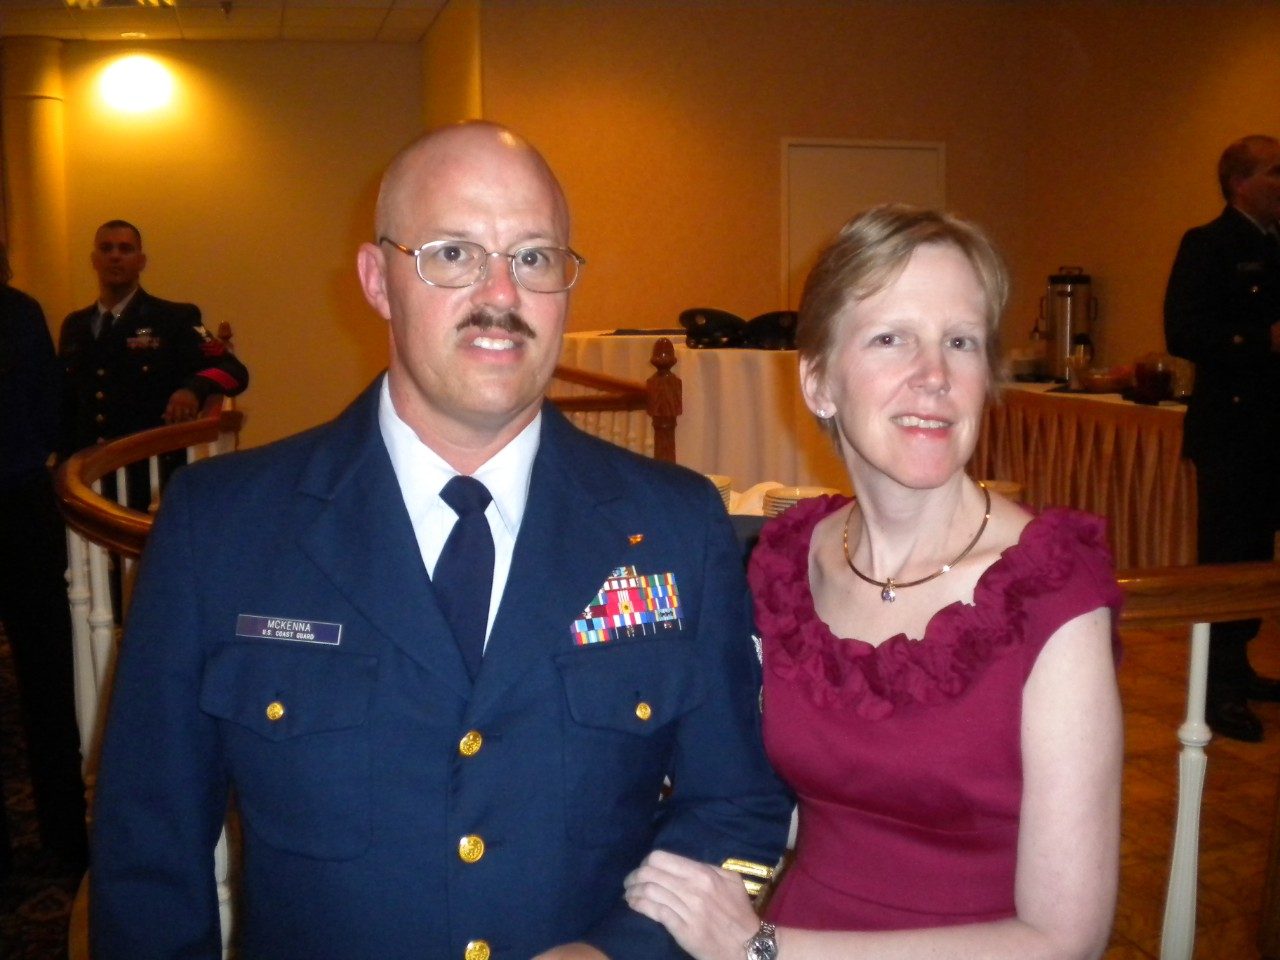 癌症方面的博客:胶质母细胞瘤幸存者杰奎琳·麦肯纳和她的丈夫托德